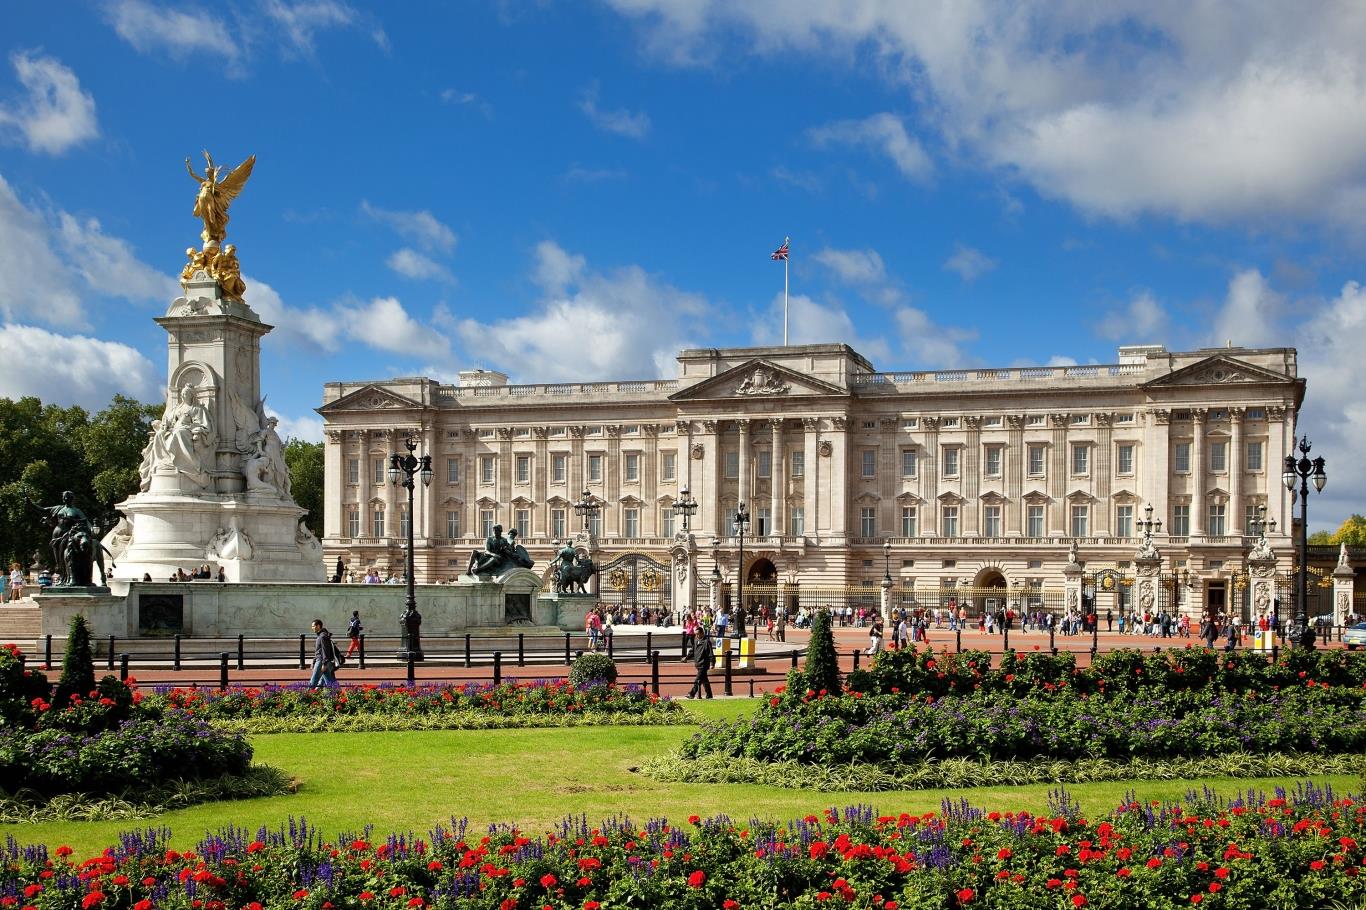 1. Buckingham Palace